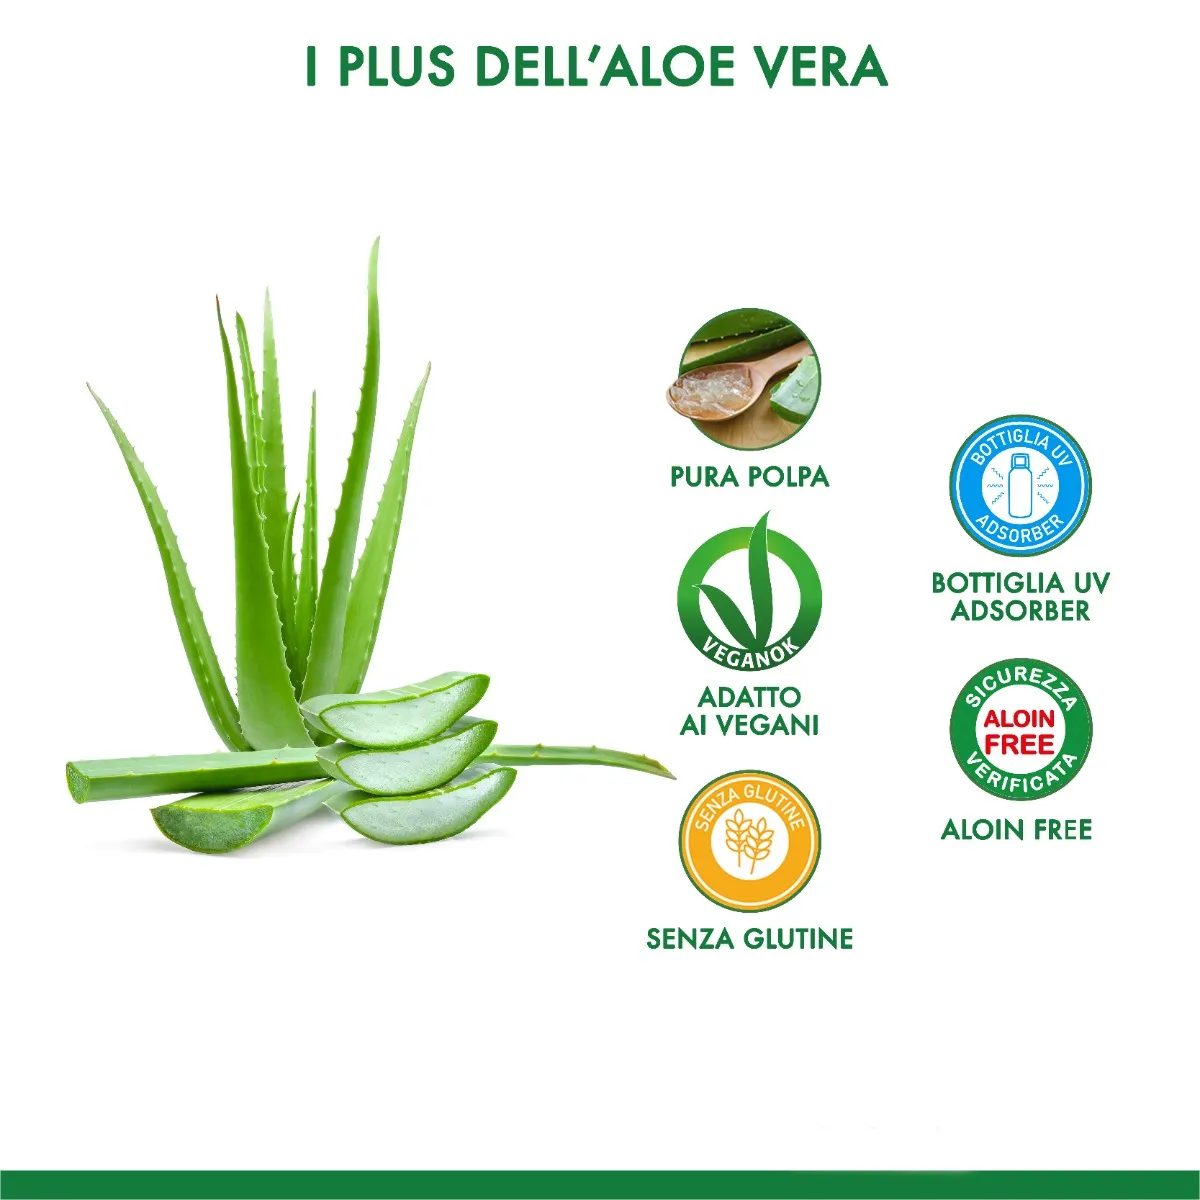 Equilibra Buon Aloe Vera 95% 500 Ml Azione Depurativa